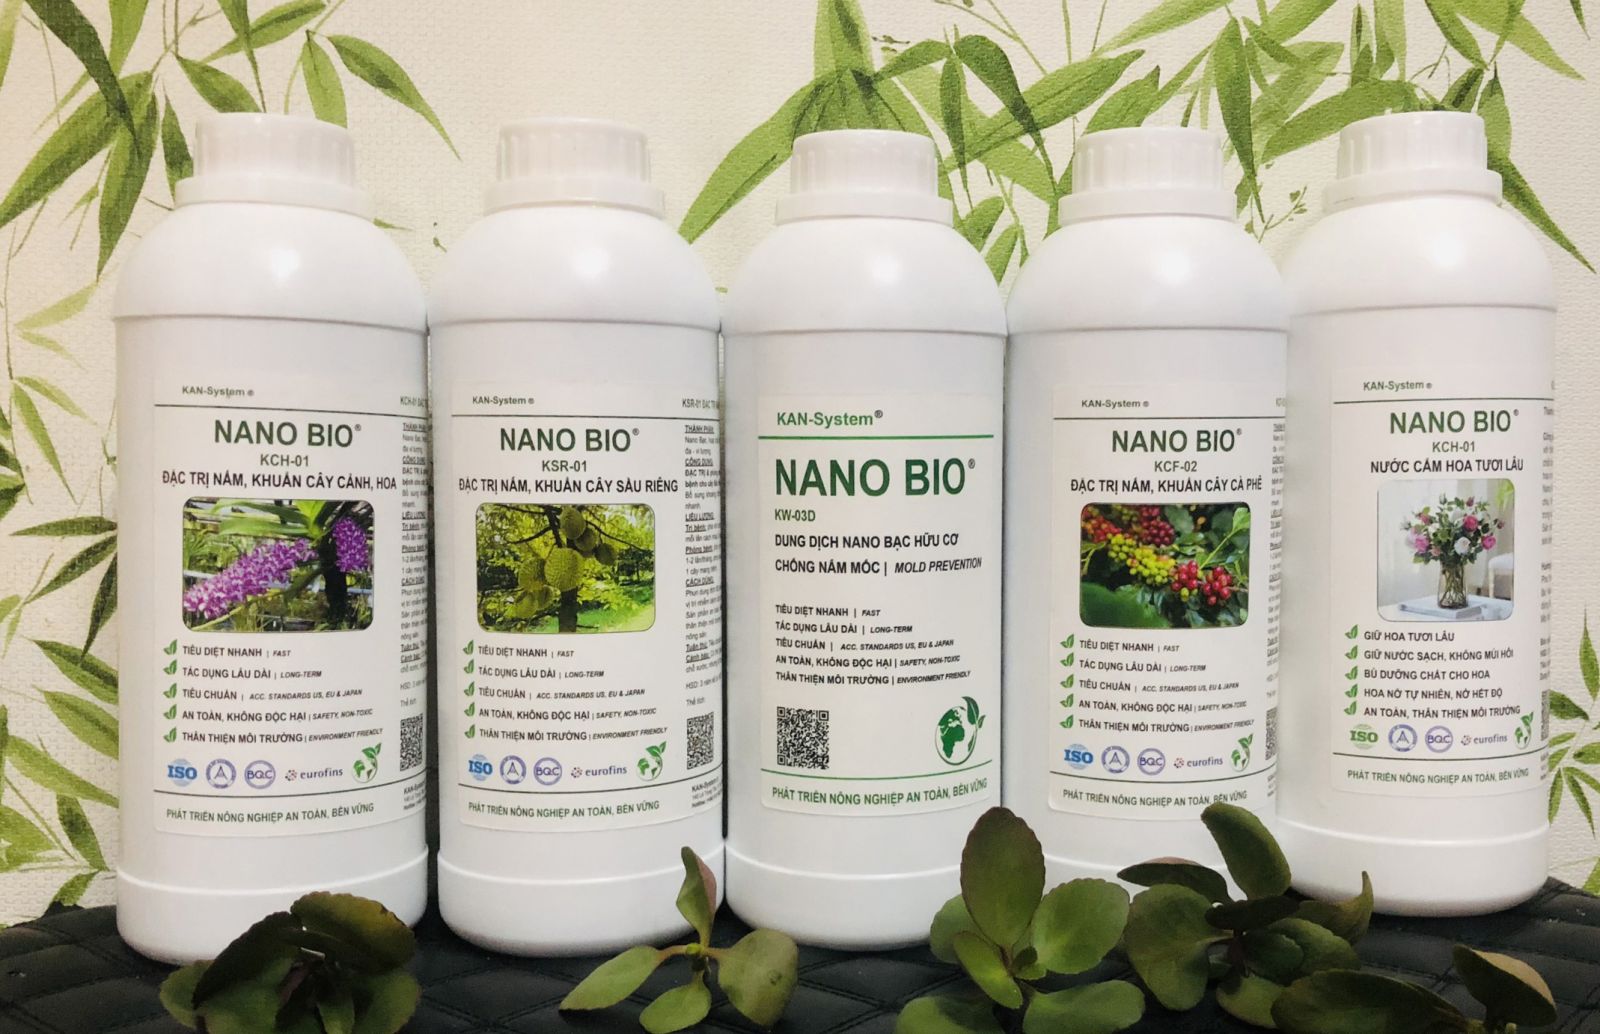 NANO BIO: ĐẶC TRỊ & phòng chống bệnh do nấm, vi khuẩn gây bệnh cho Rau màu